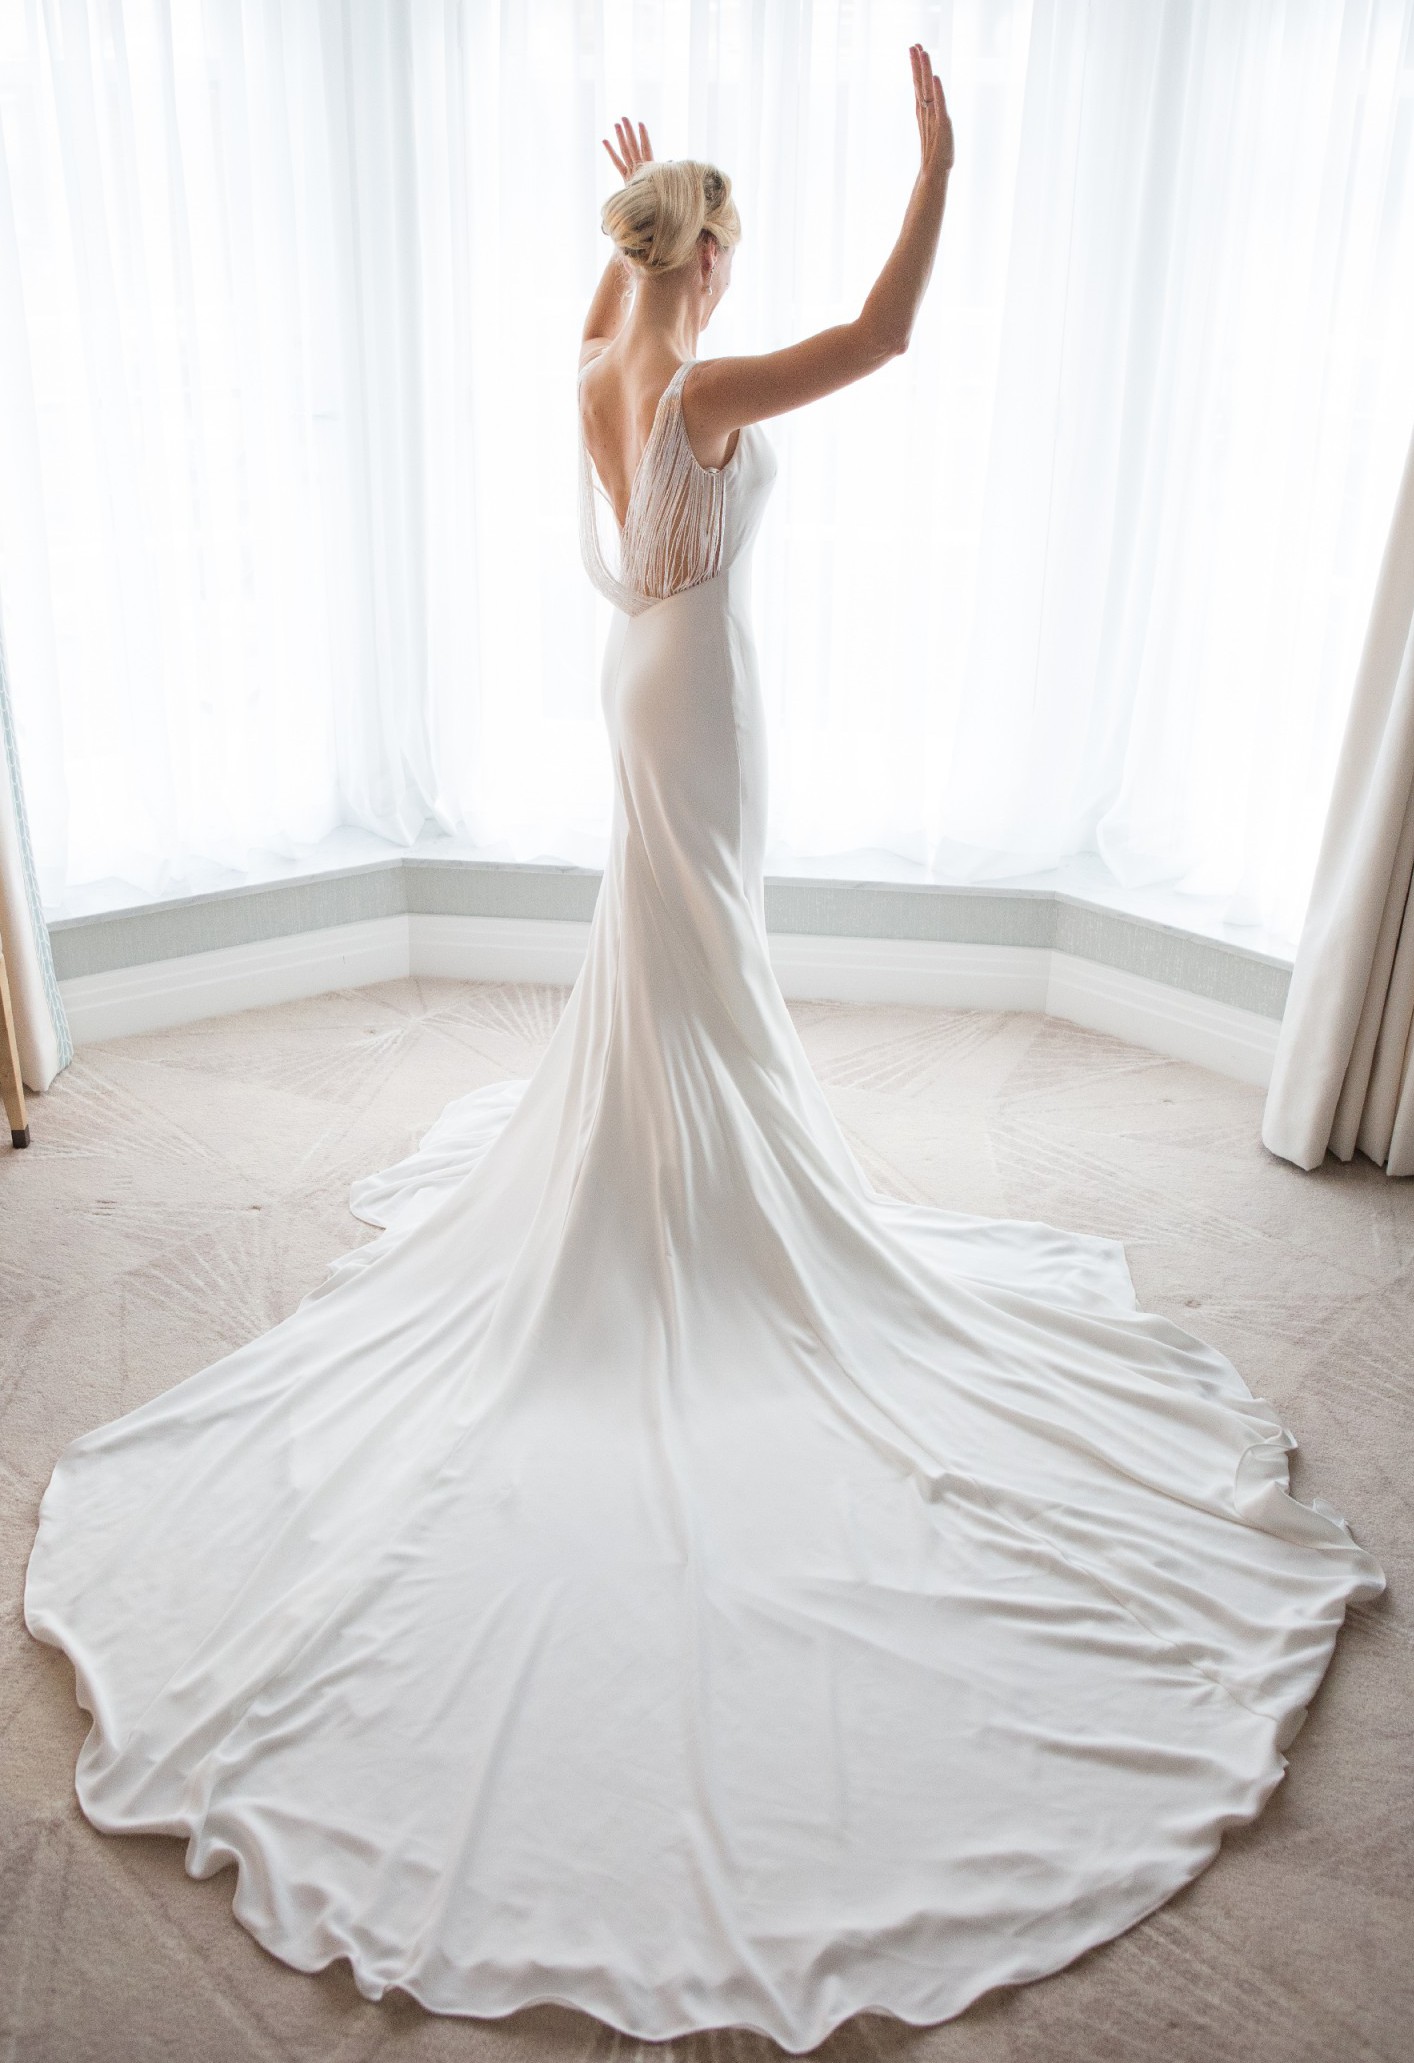 elegant dress for wedding sponsor